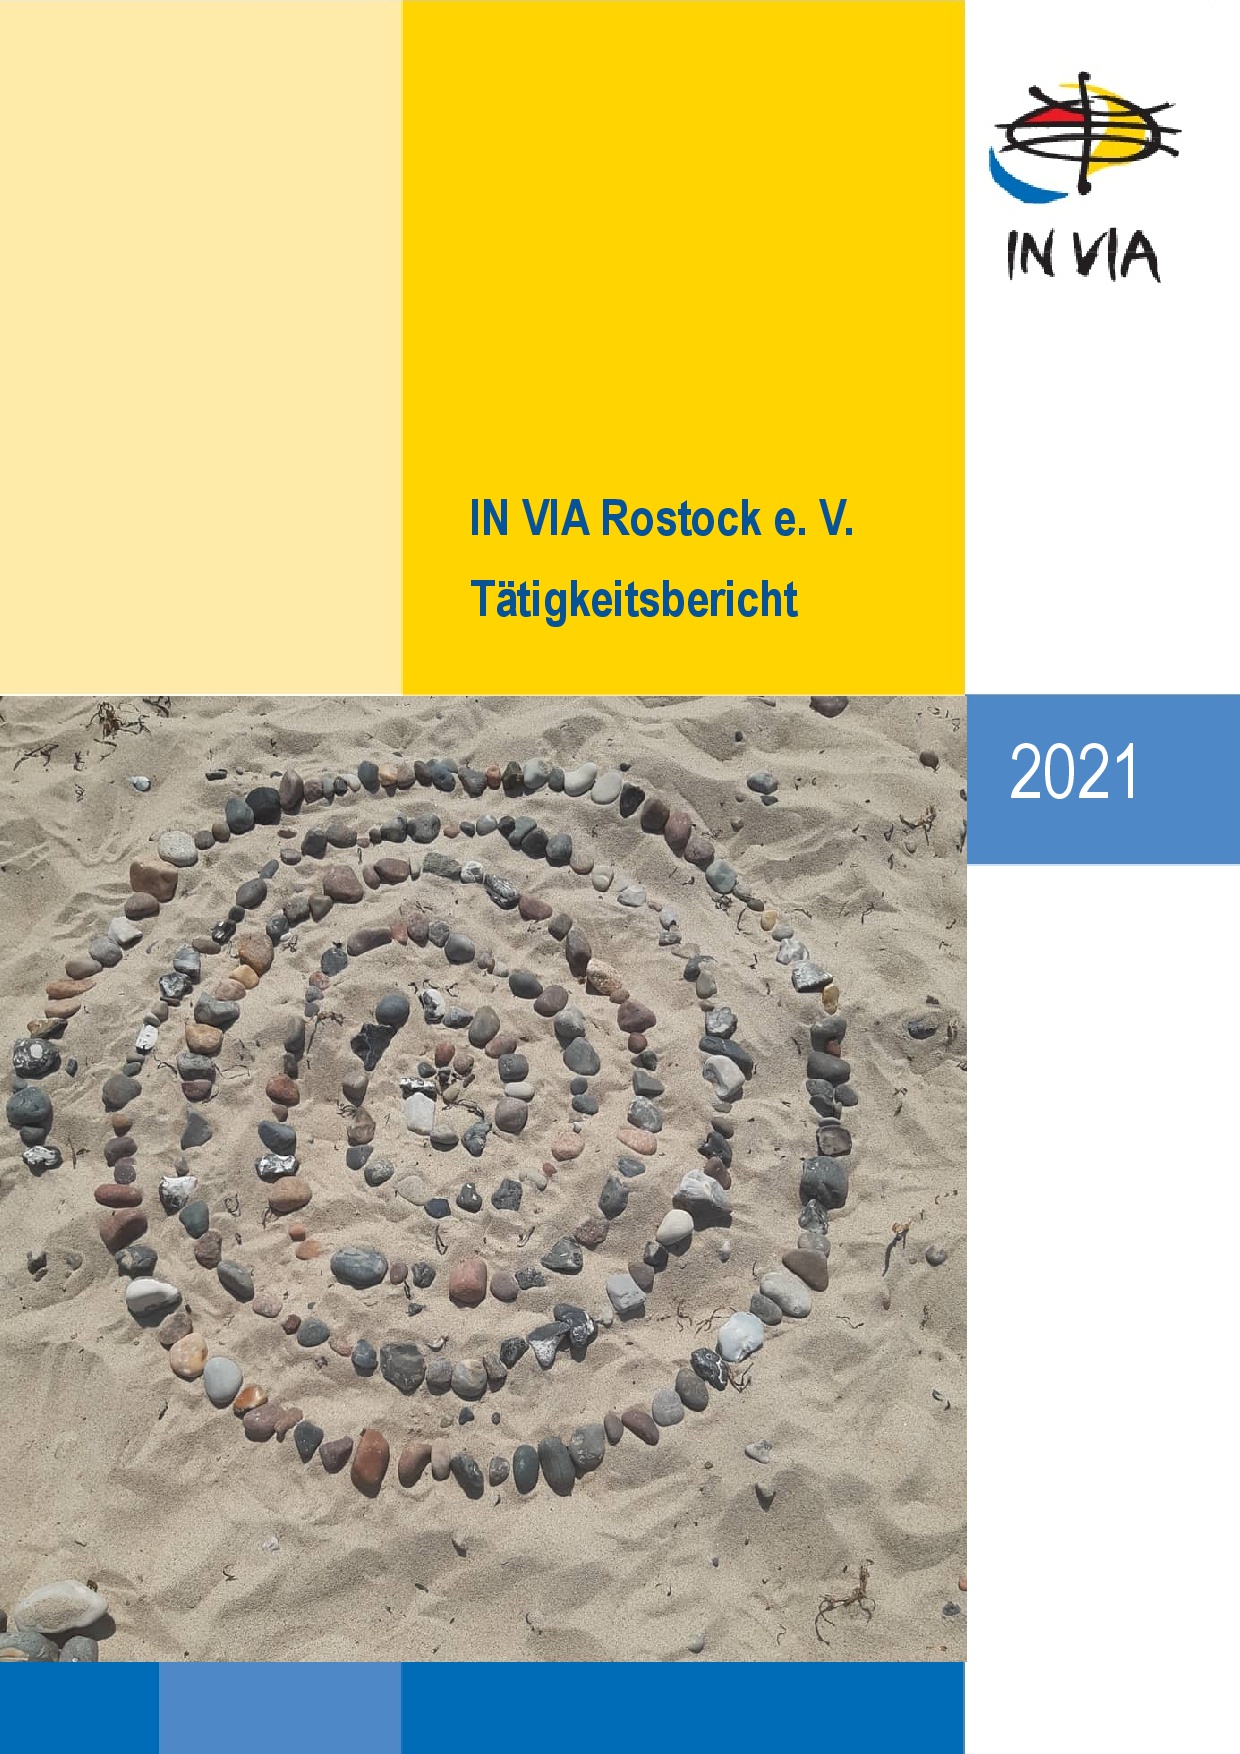 titelblatt-inviarostockev-taetigkeitsbericht-2021.jpg